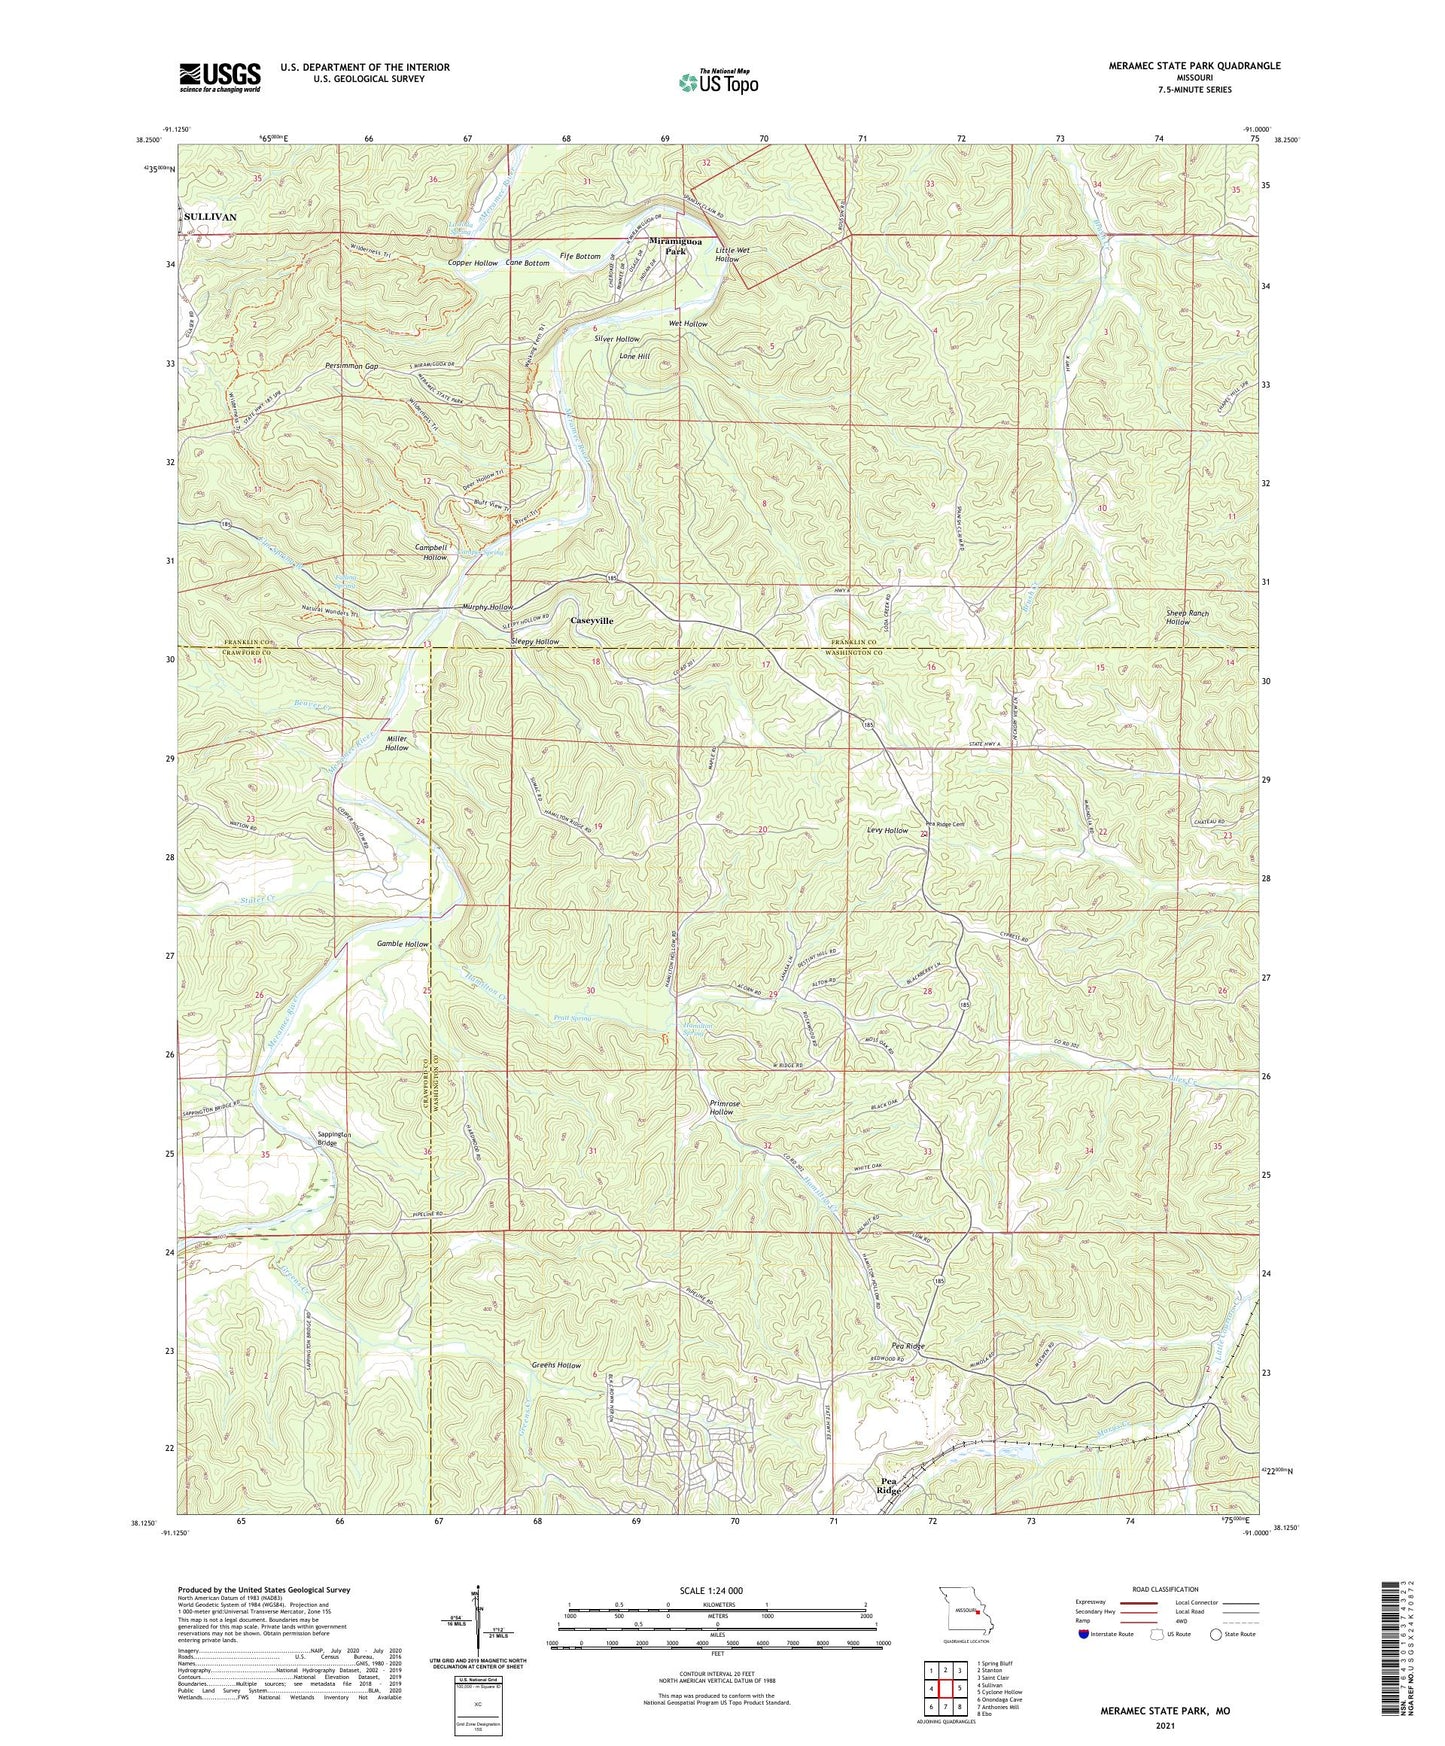 Meramec State Park Missouri US Topo Map Image